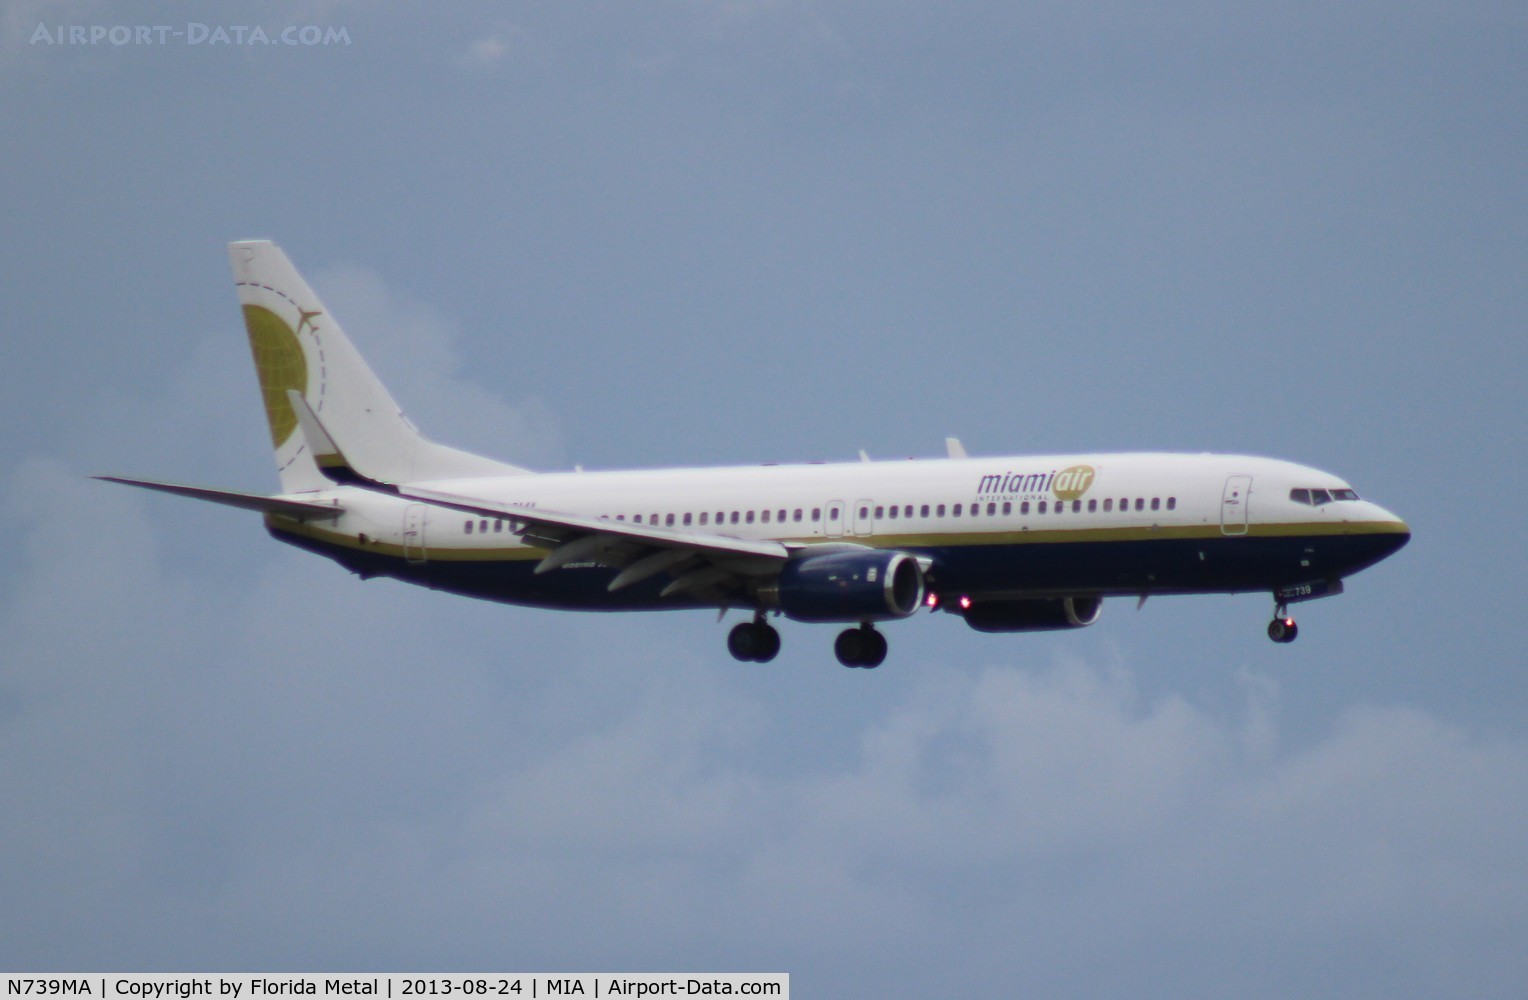 N739MA, 2004 Boeing 737-8Q8 C/N 30670, Miami Air 737-800